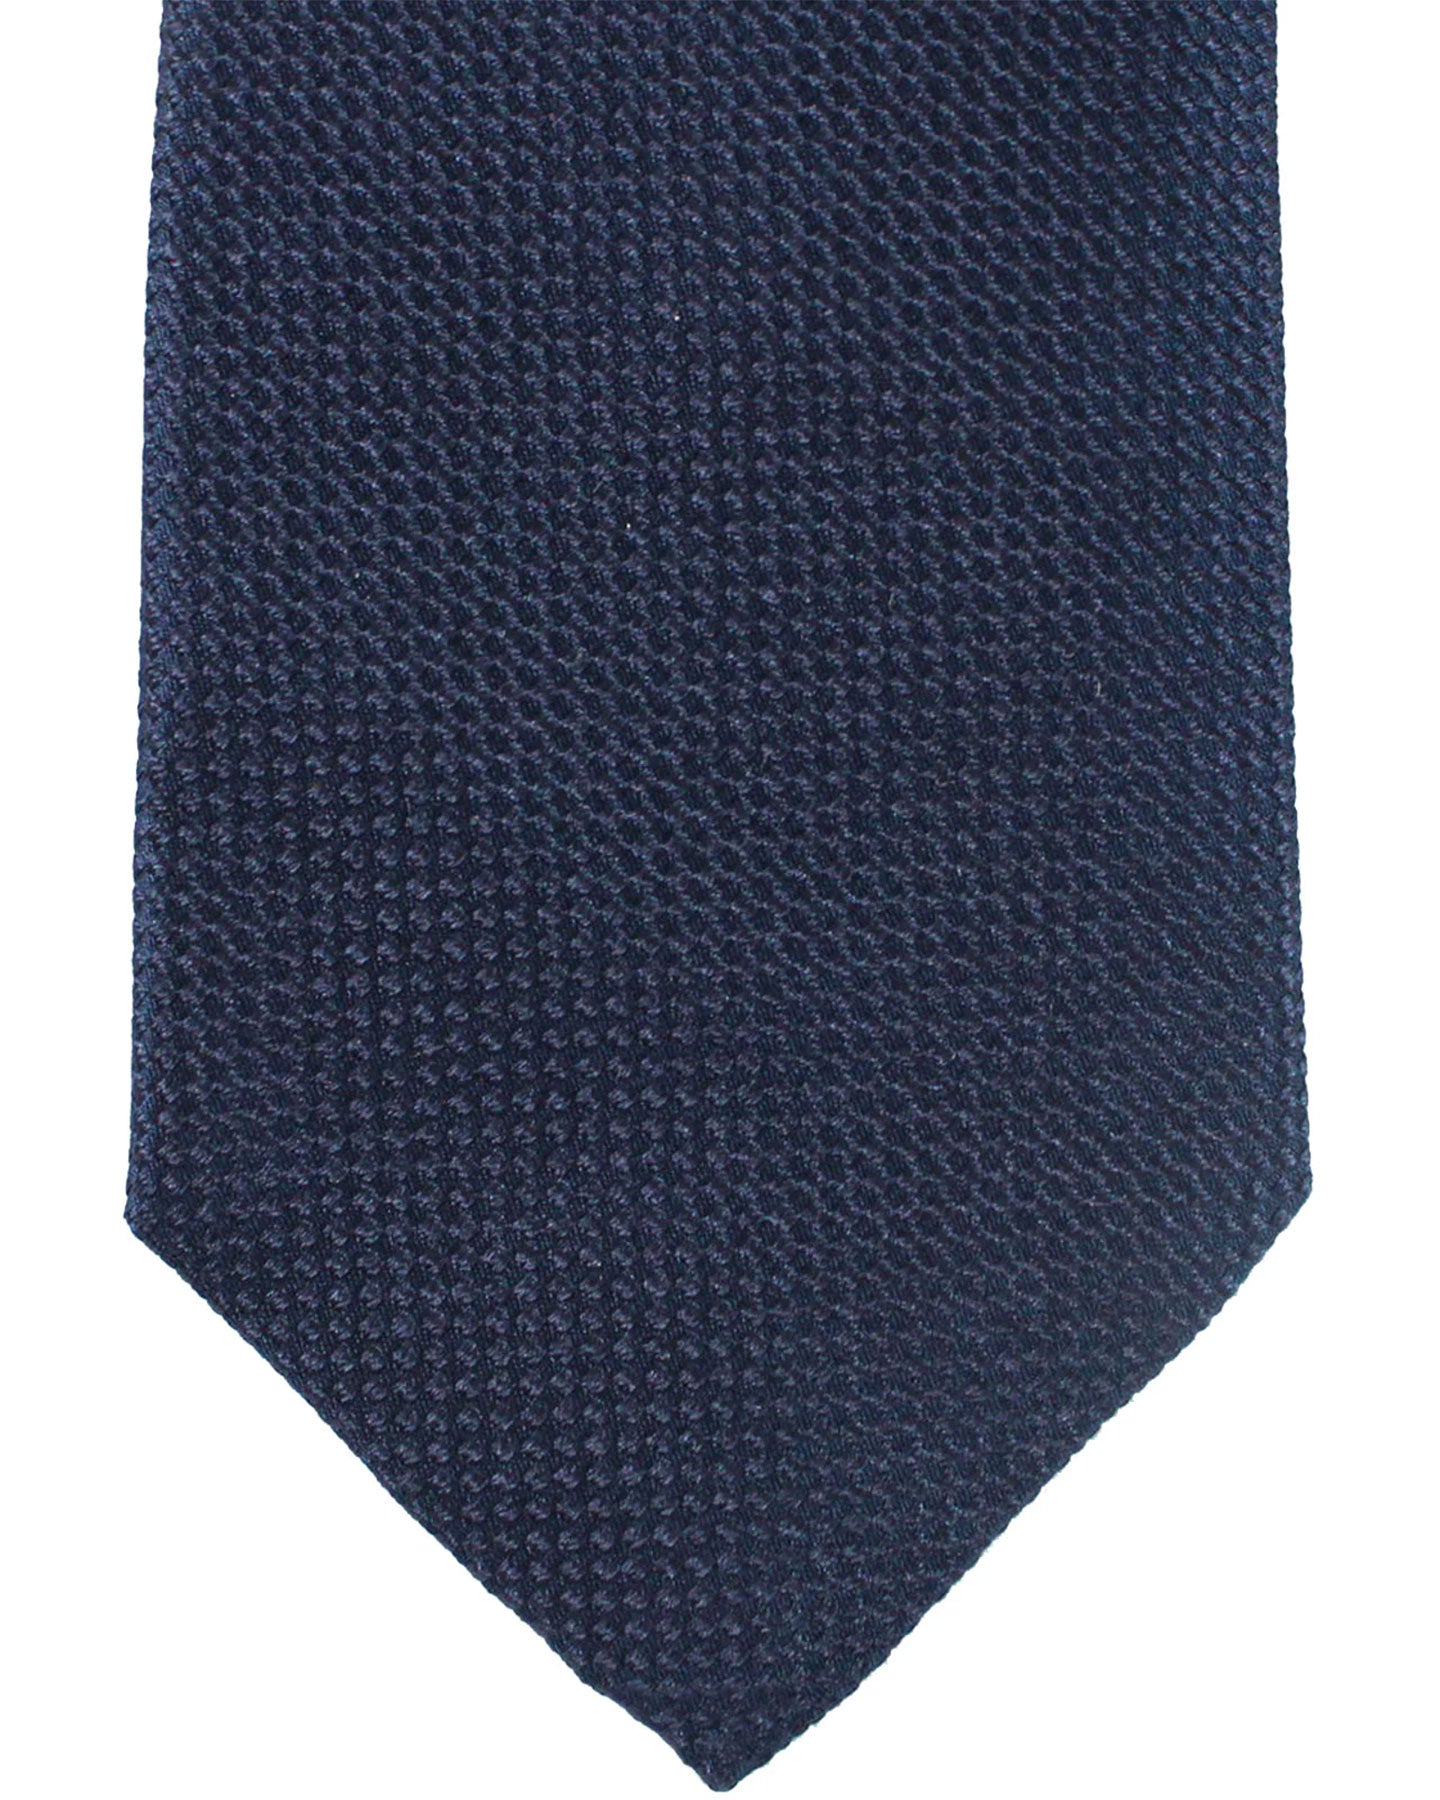 Armani Silk Tie Midnight Blue Geometric